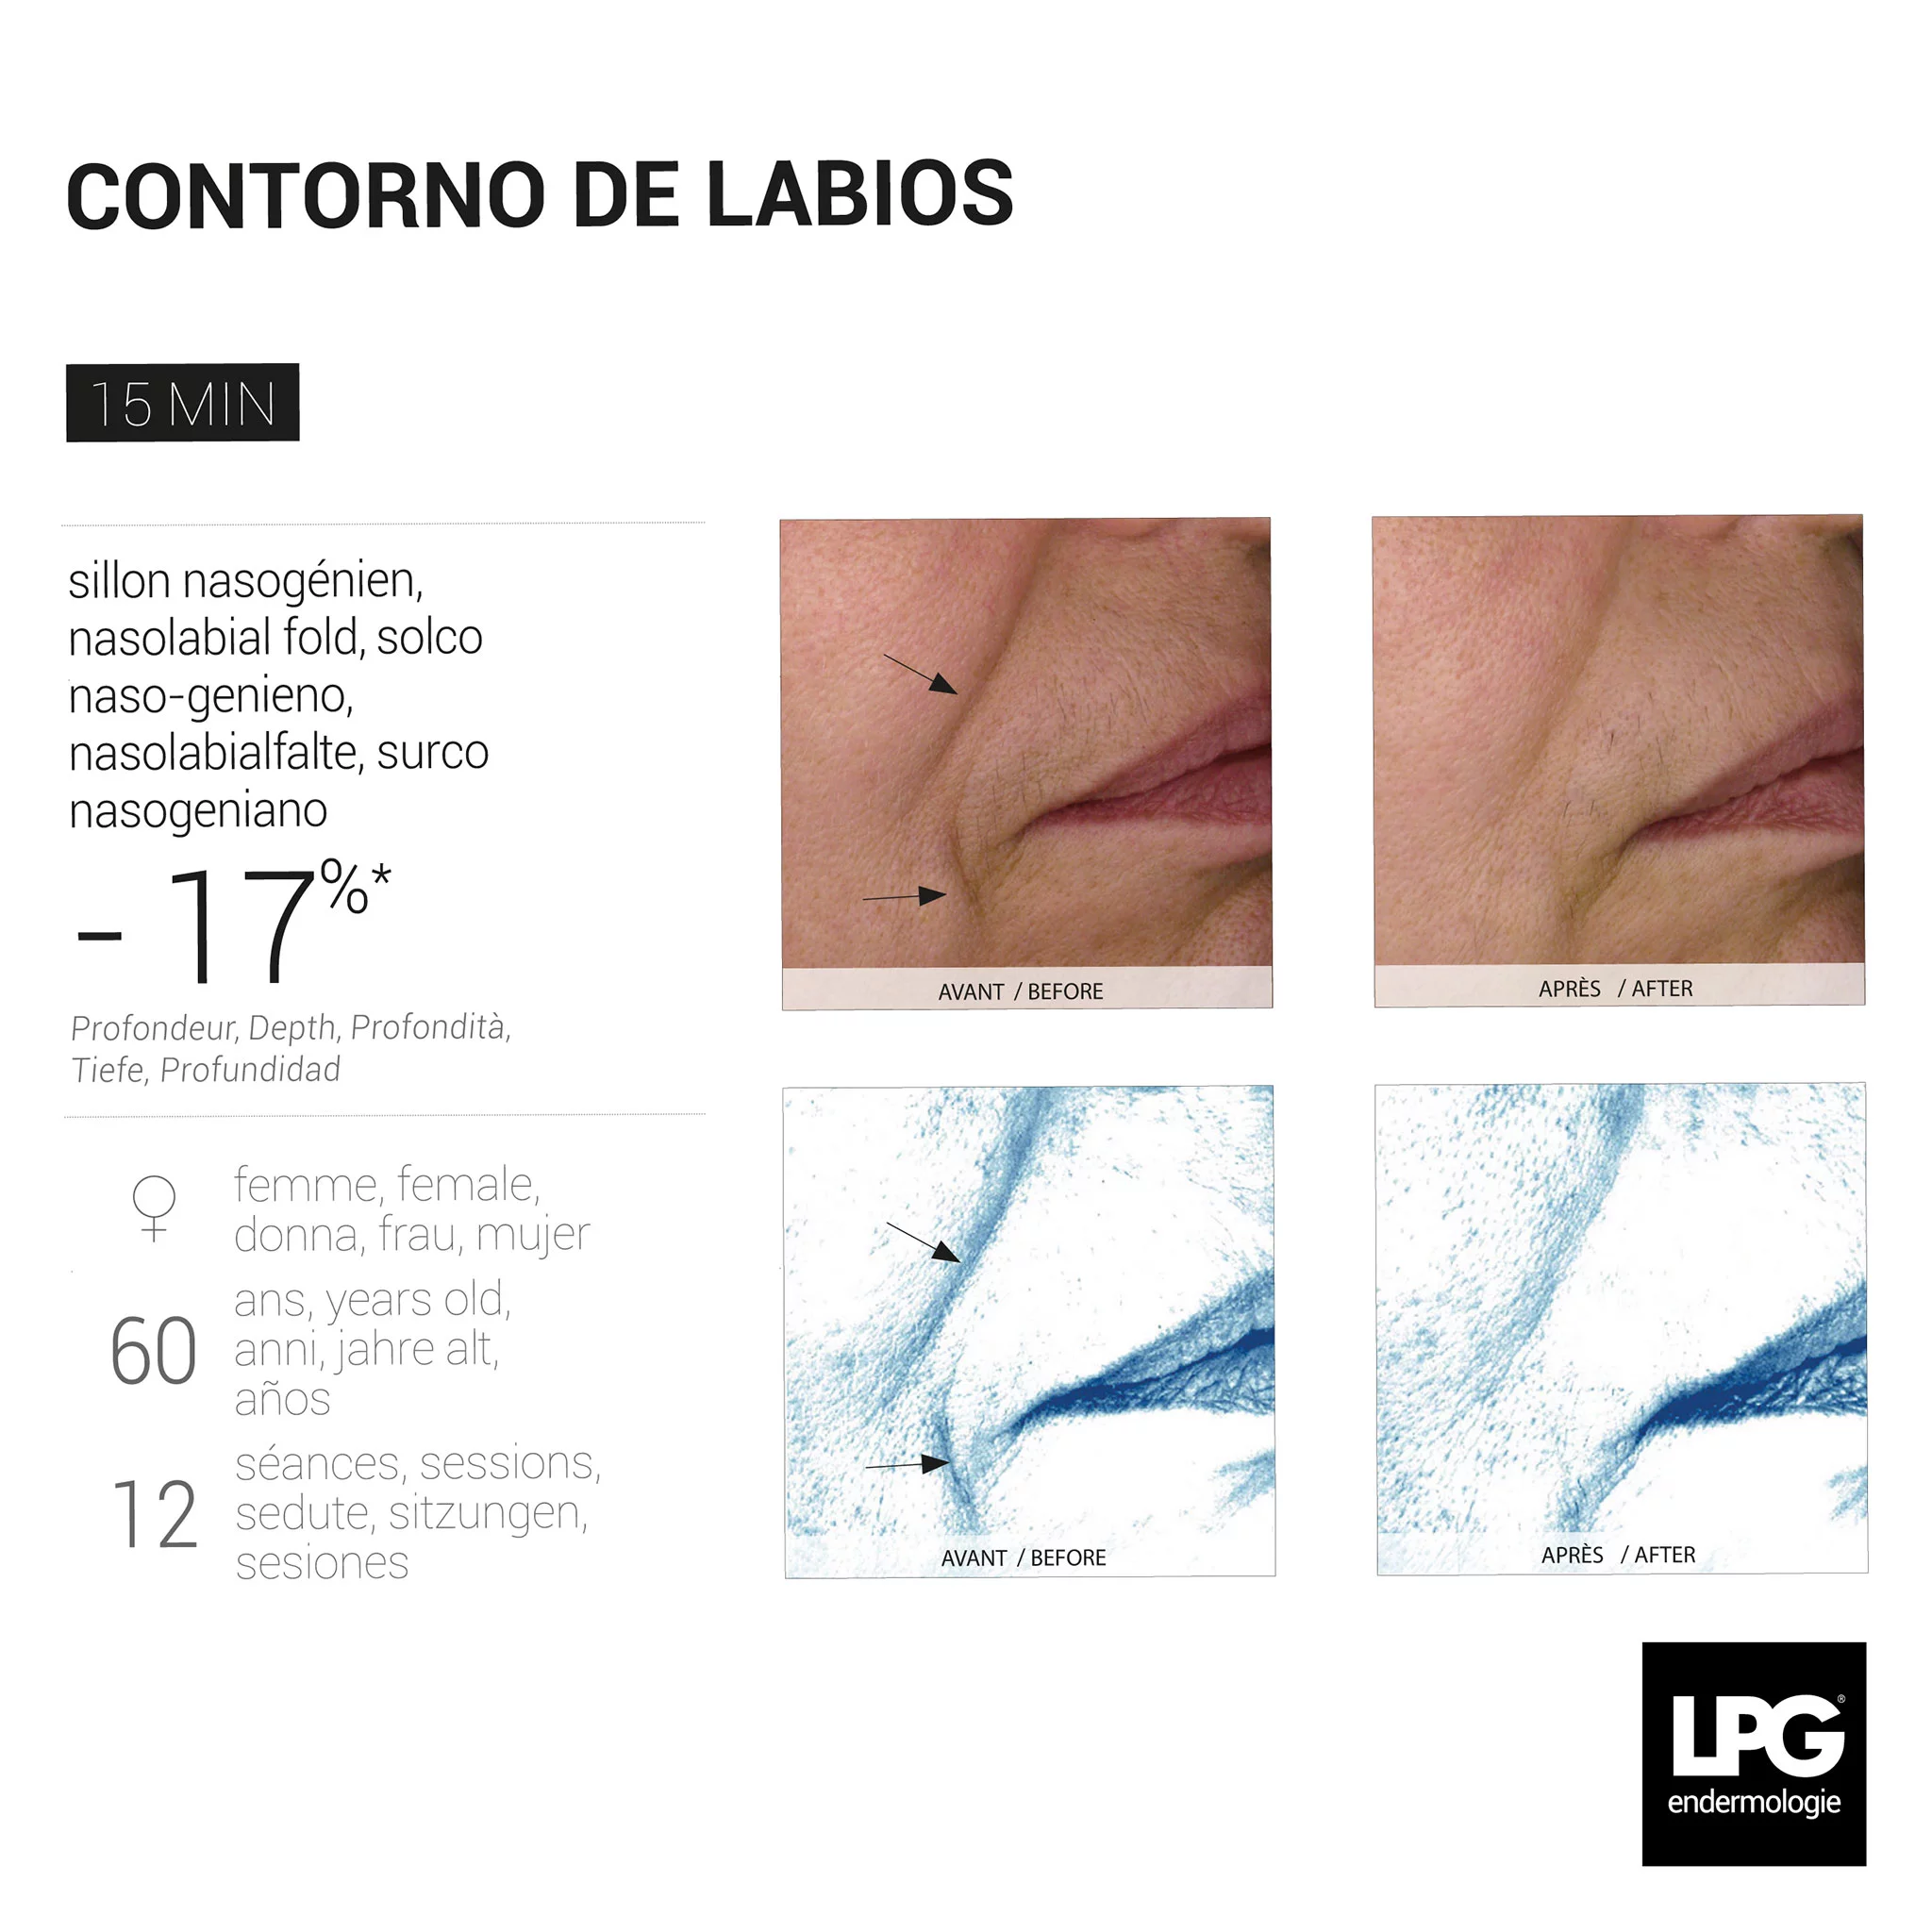 Antes y después de un tratamiento del contorno de labios con LPG Endermologie en Centre Fisiobioestètic